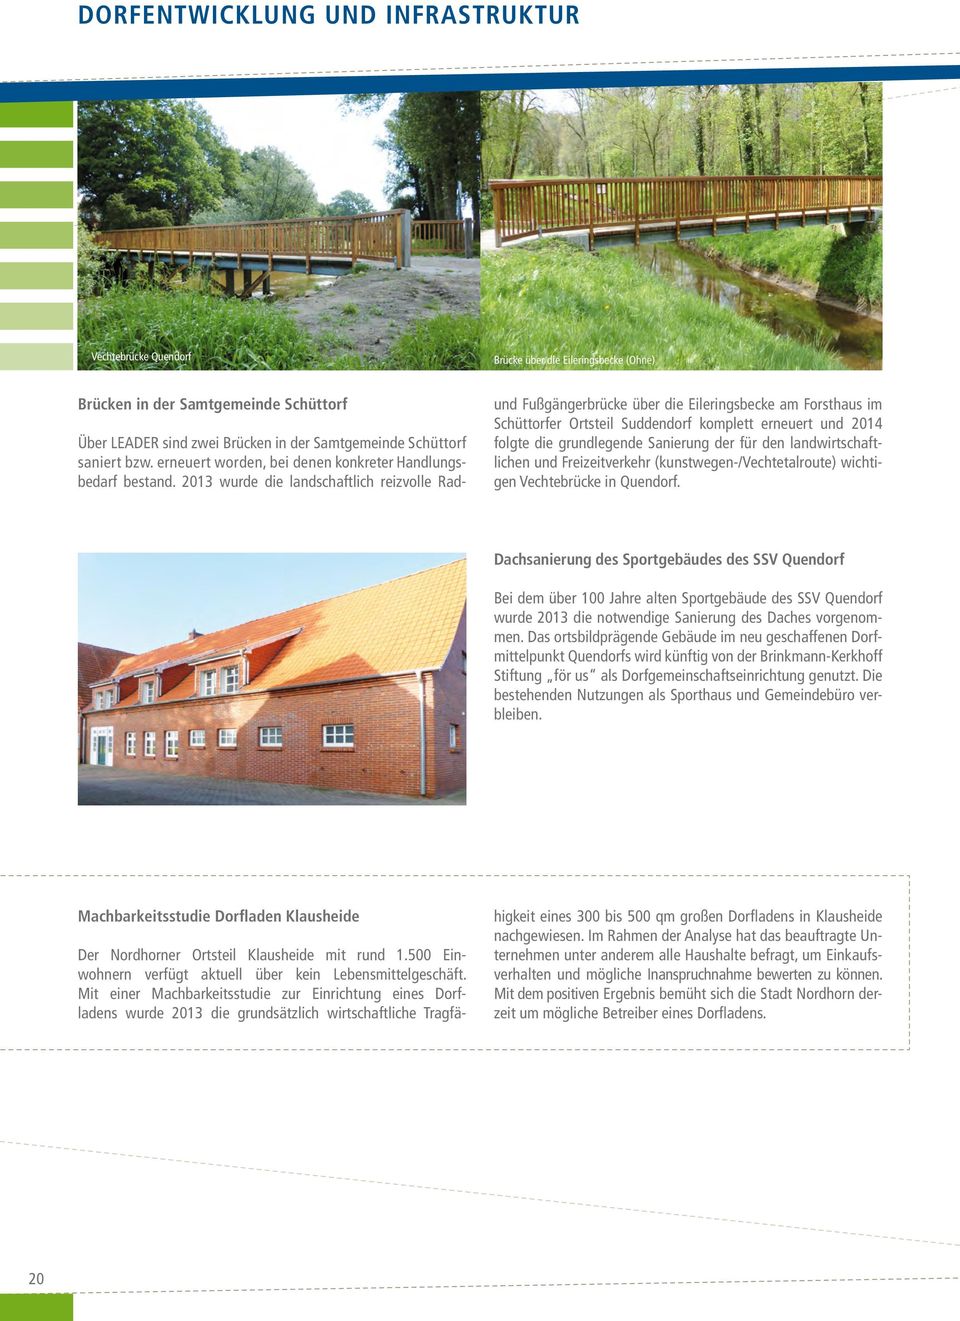 2013 wurde die landschaftlich reizvolle Rad- und Fußgängerbrücke über die Eileringsbecke am Forsthaus im Schüttorfer Ortsteil Suddendorf komplett erneuert und 2014 folgte die grundlegende Sanierung